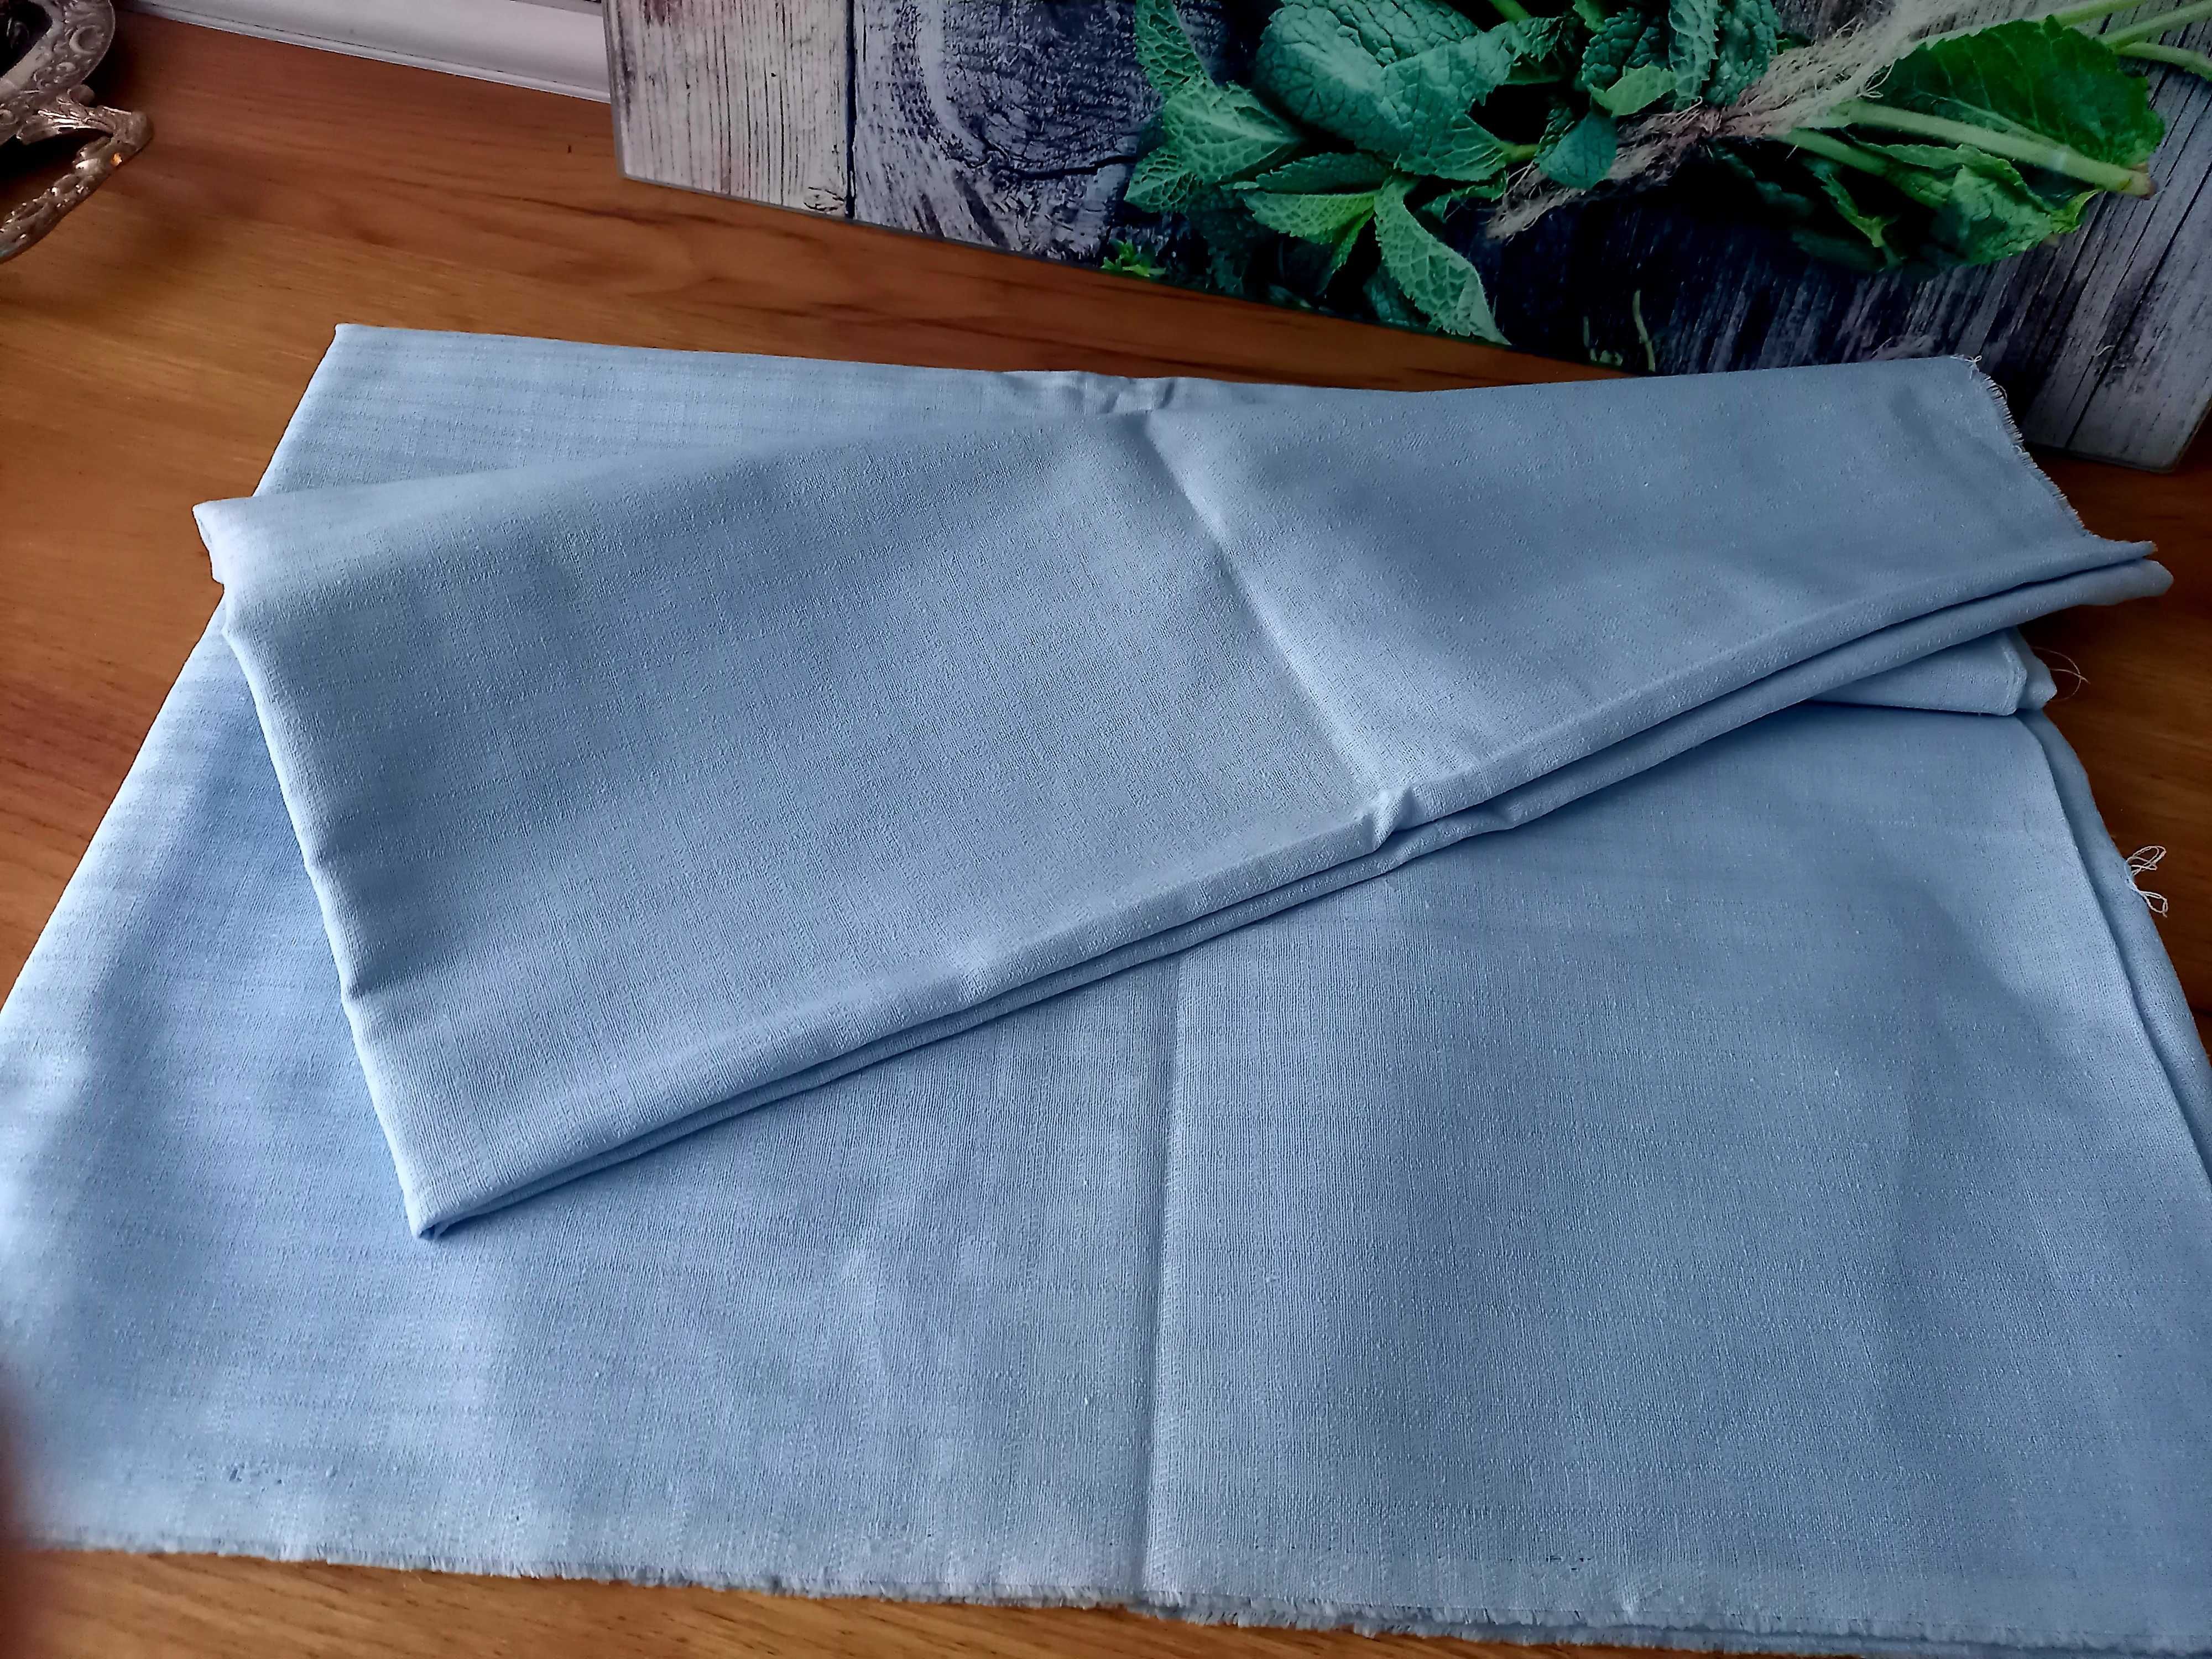 Niebieska tkanina materiał bawełna